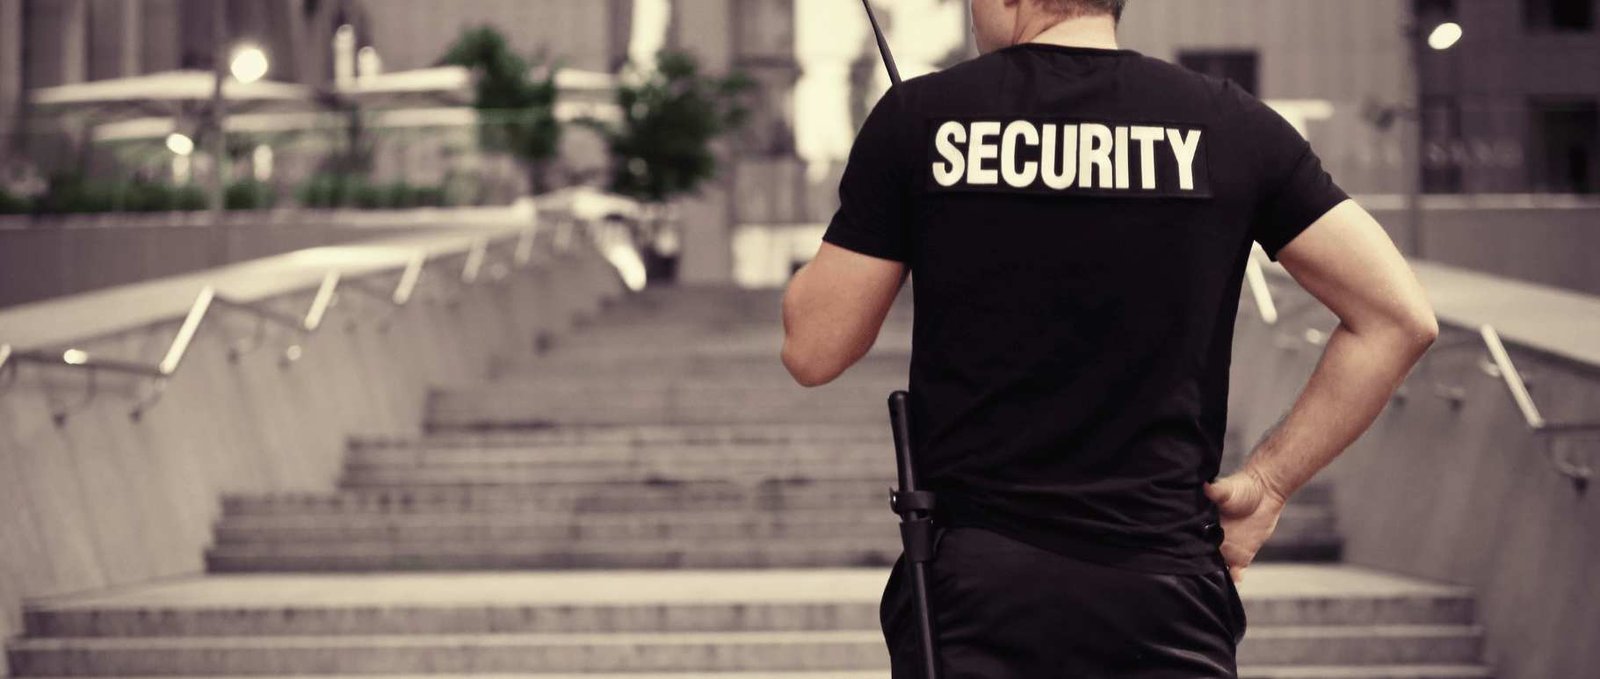 noida-security-services